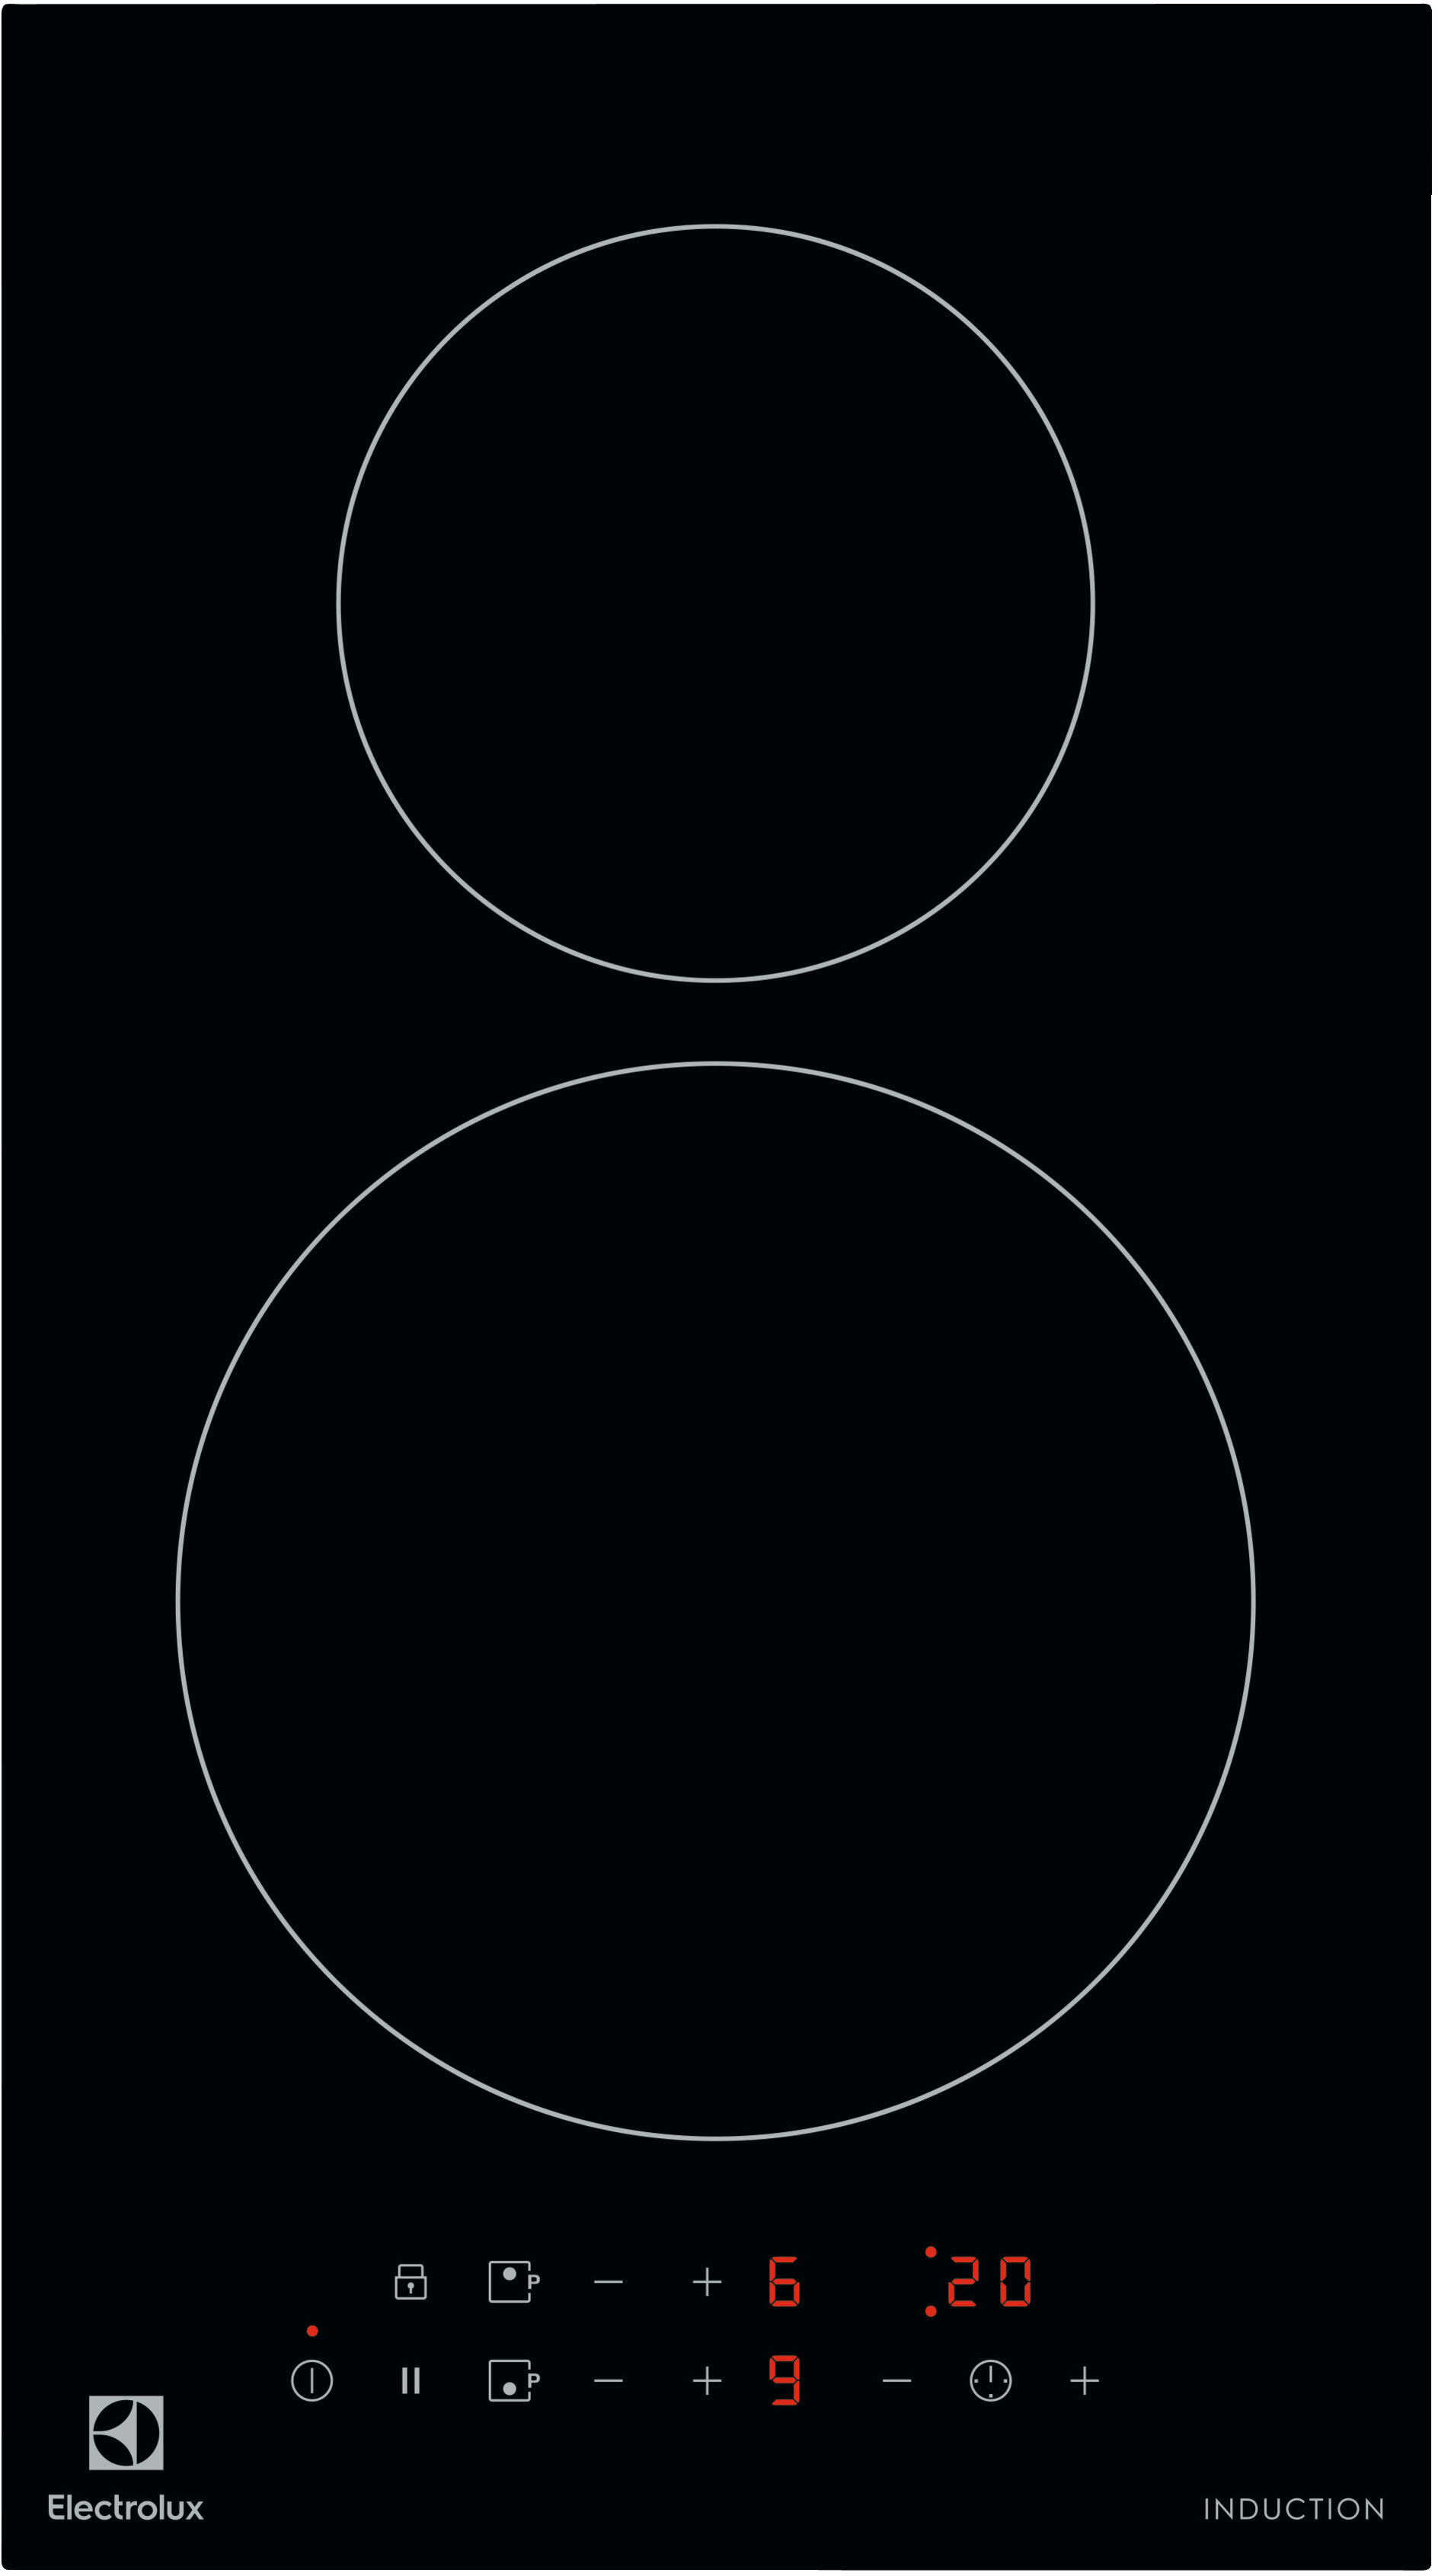 Домино ELECTROLUX/ Индукционная варочная поверхность, цвет: Черный, , индивидуальный таймер для каждой зоны нагрева, без рамки - фотография № 1